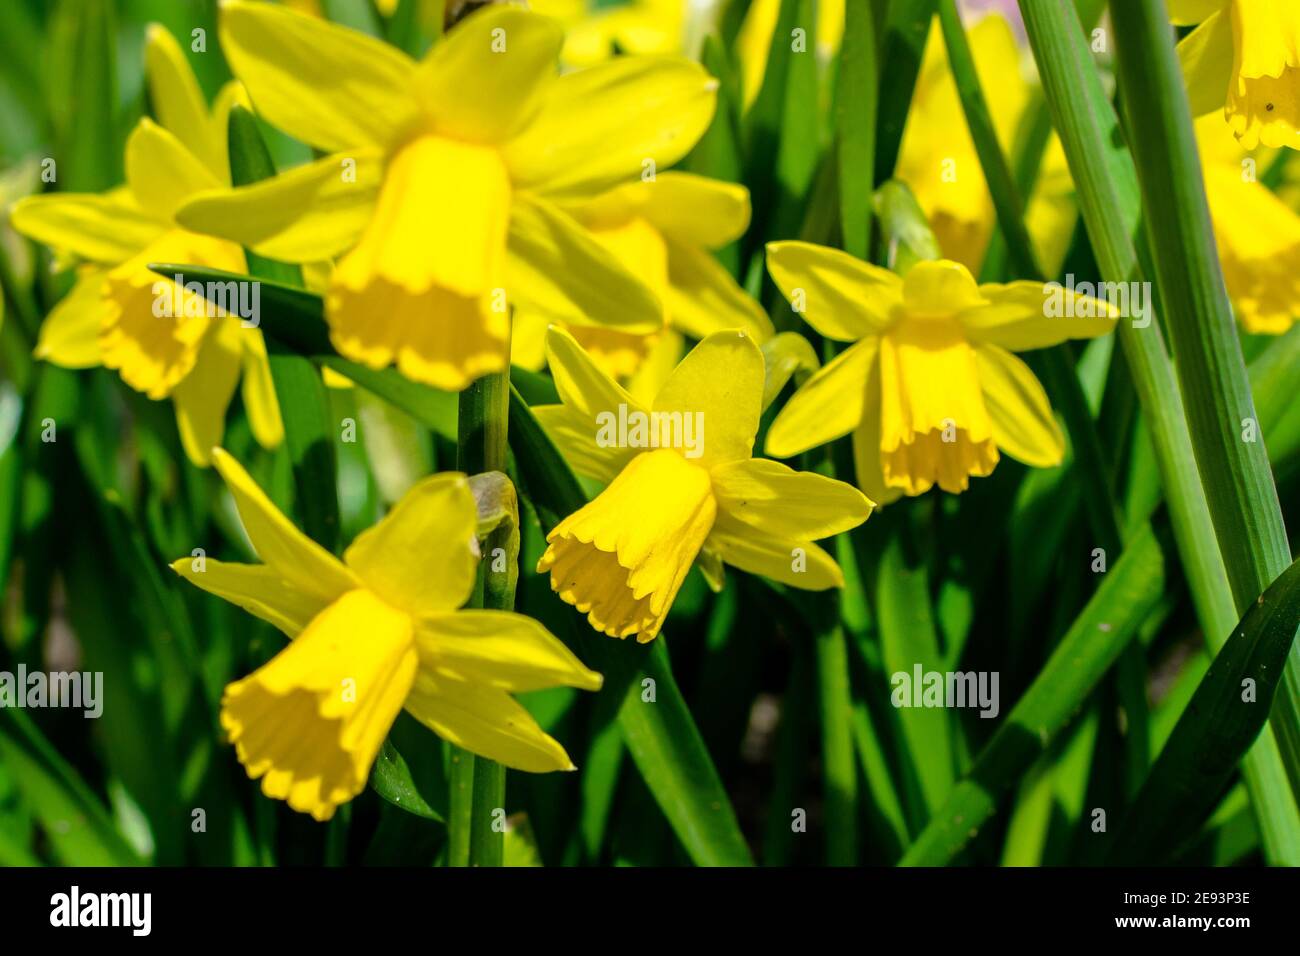 Jonquilles jaune dans un jardin au printemps Banque D'Images